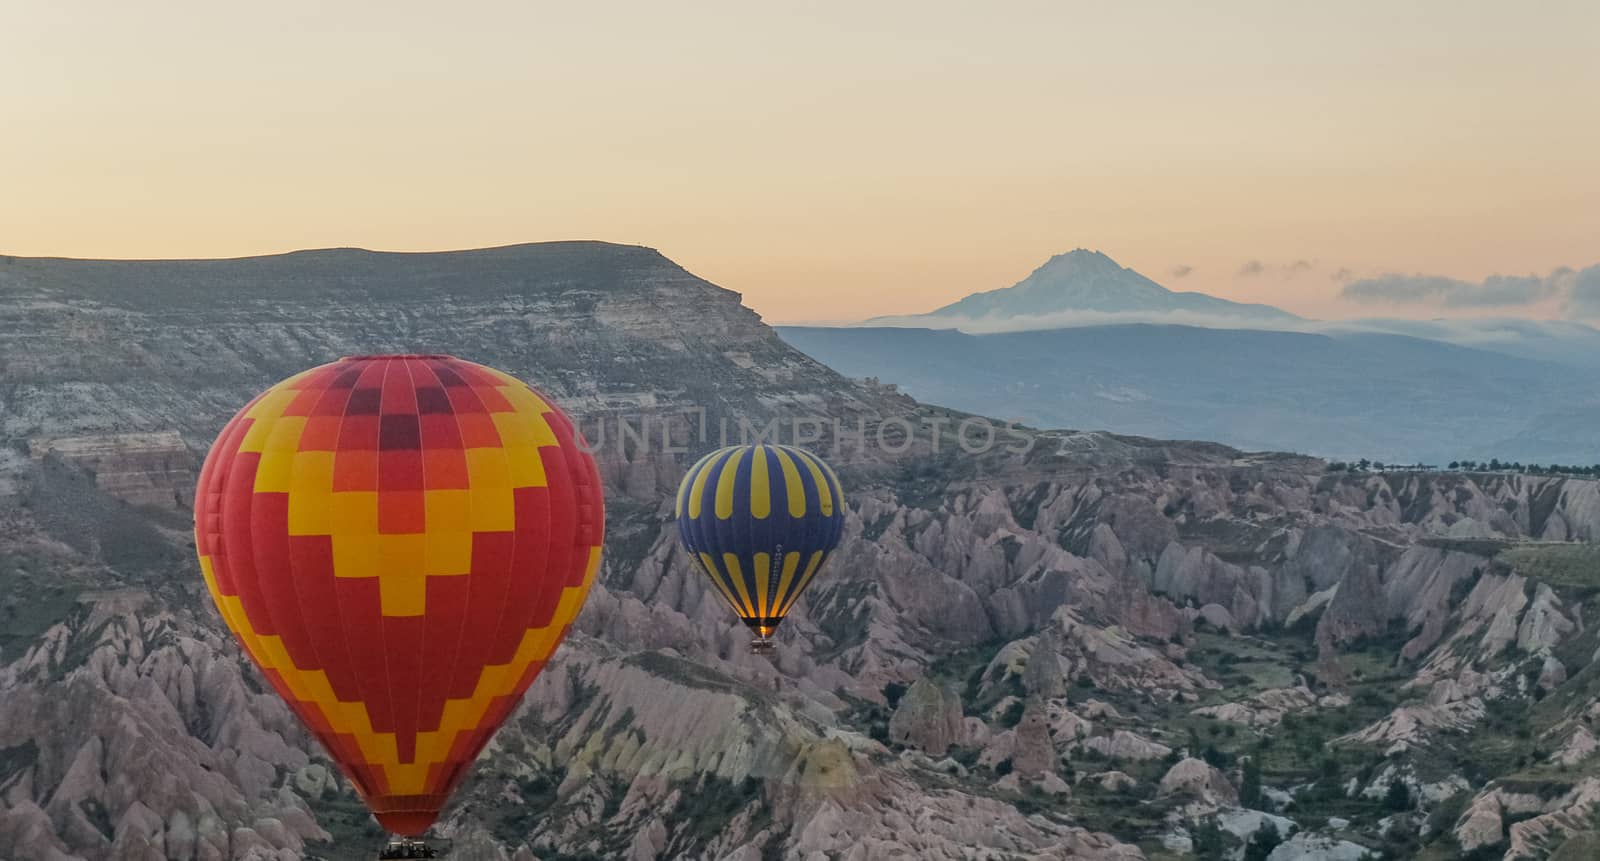 Morning balloon ride over Cappadocia by geogif